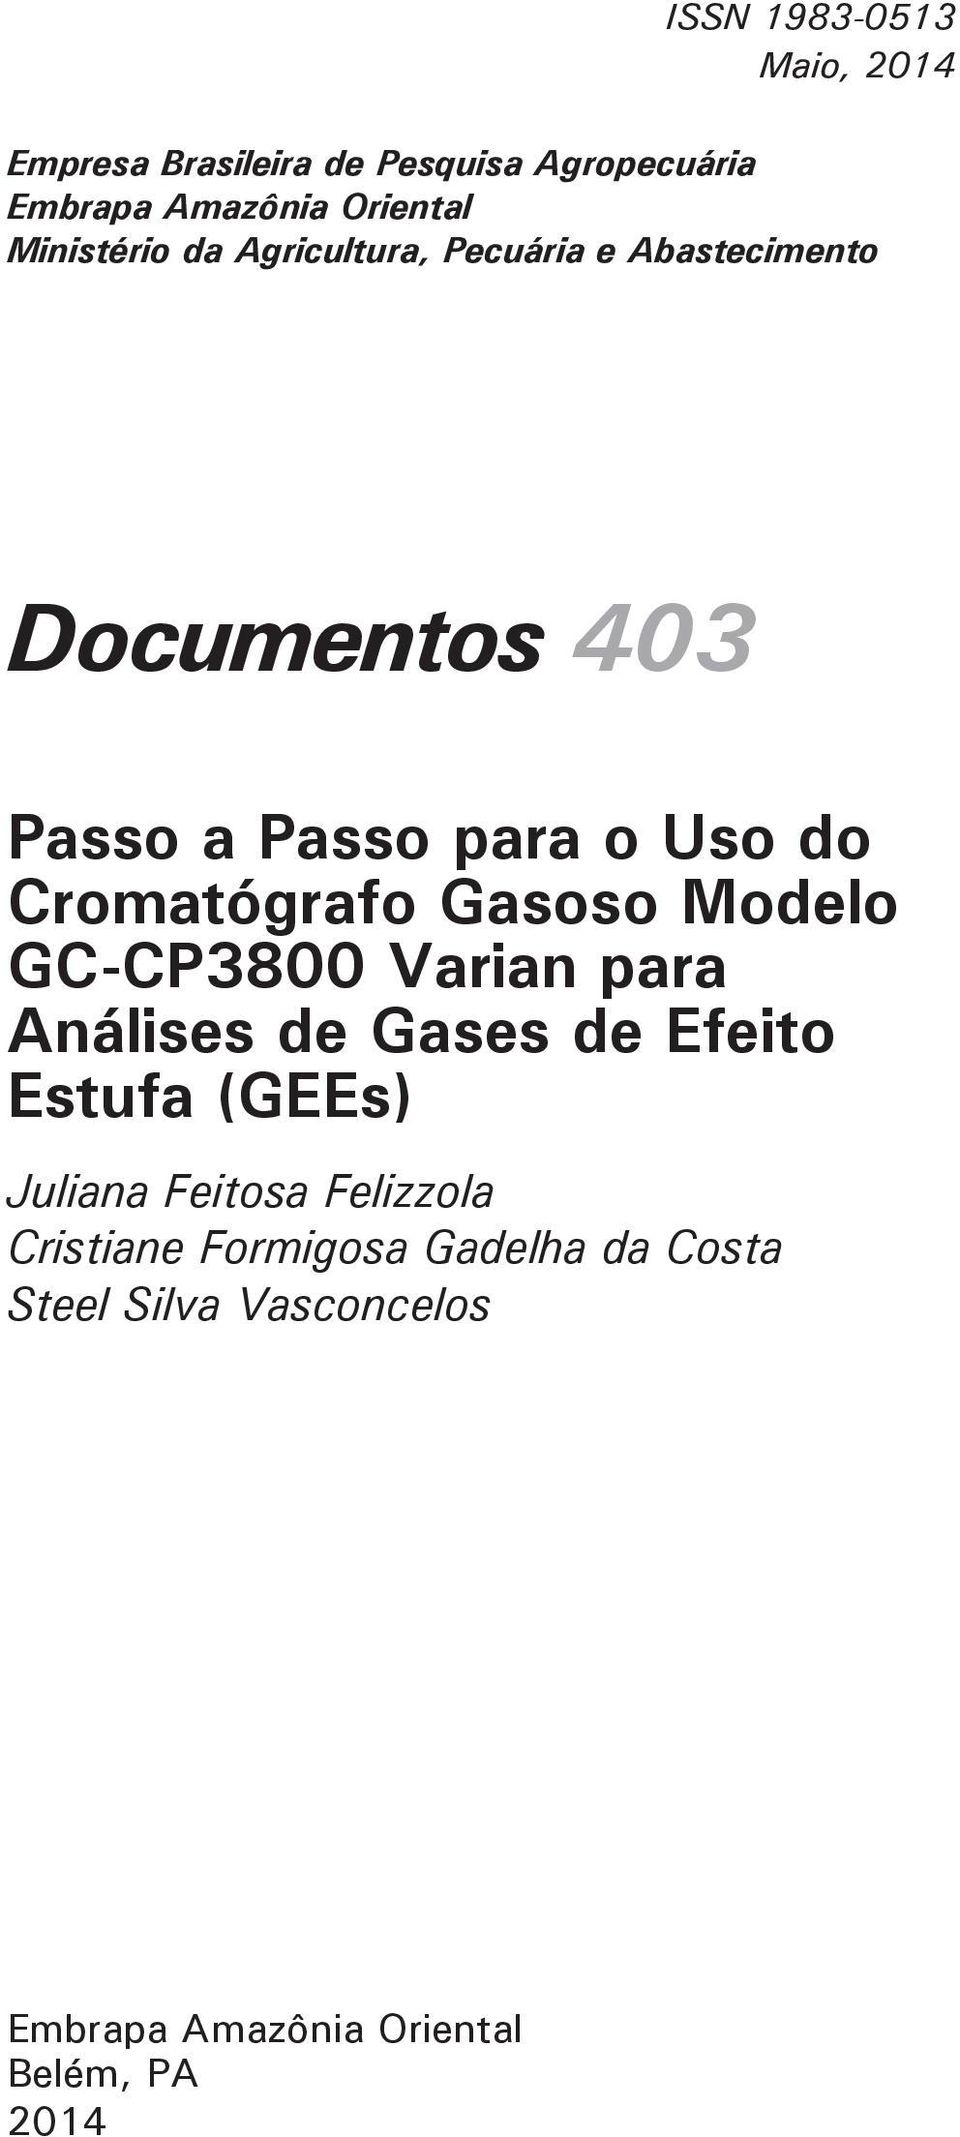 Cromatógrafo Gasoso Modelo GC-CP3800 Varian para Análises de Gases de Efeito Estufa (GEEs) Juliana